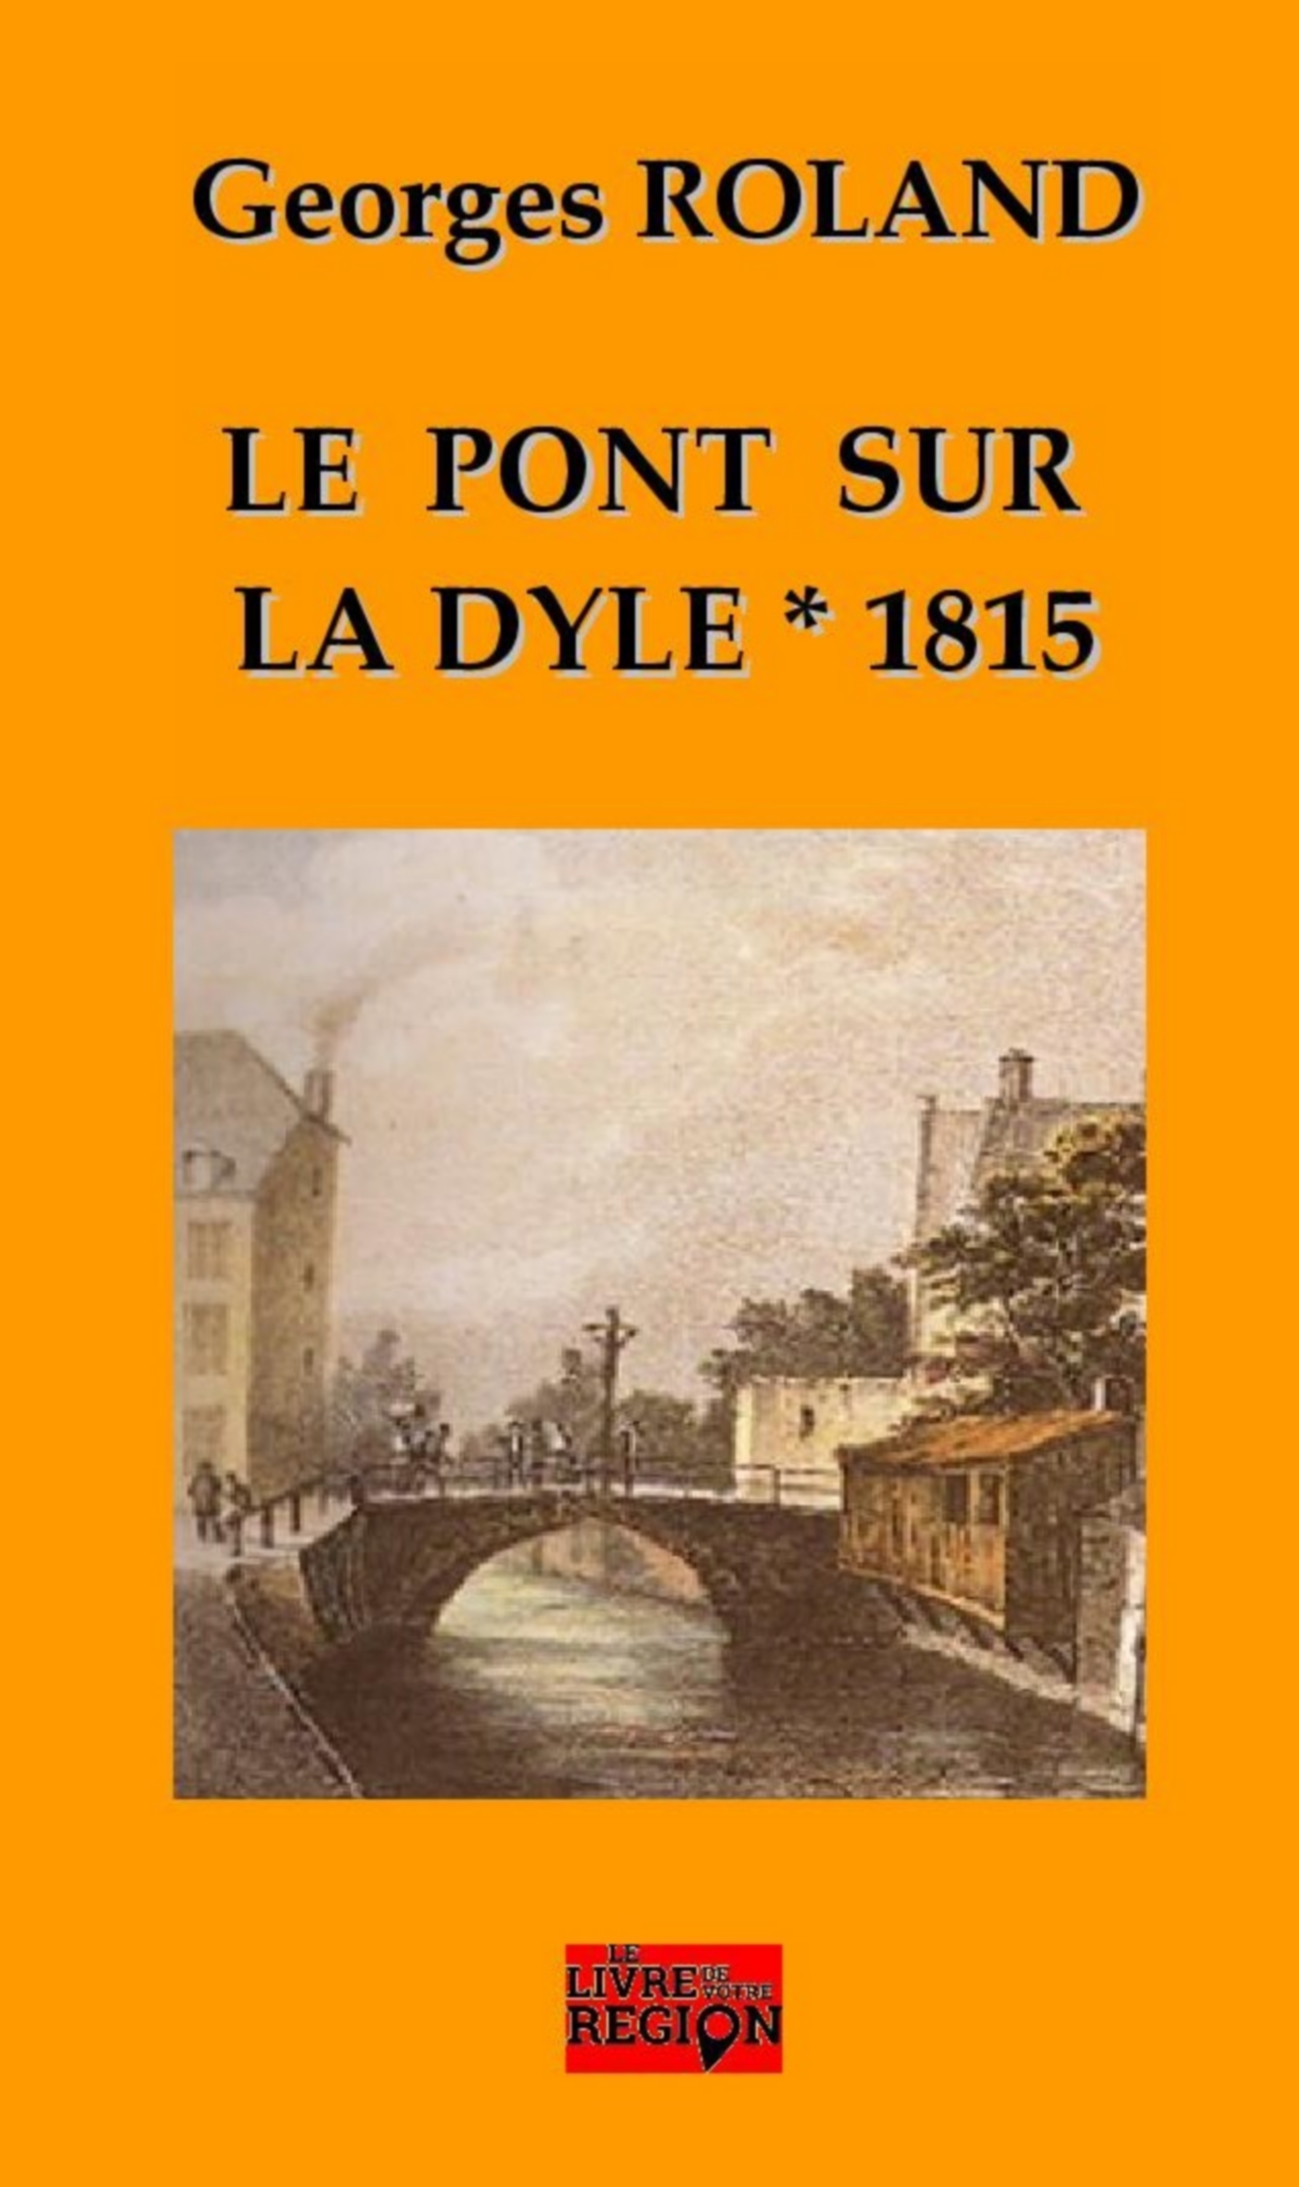 Le pont sur la Dyle 1815